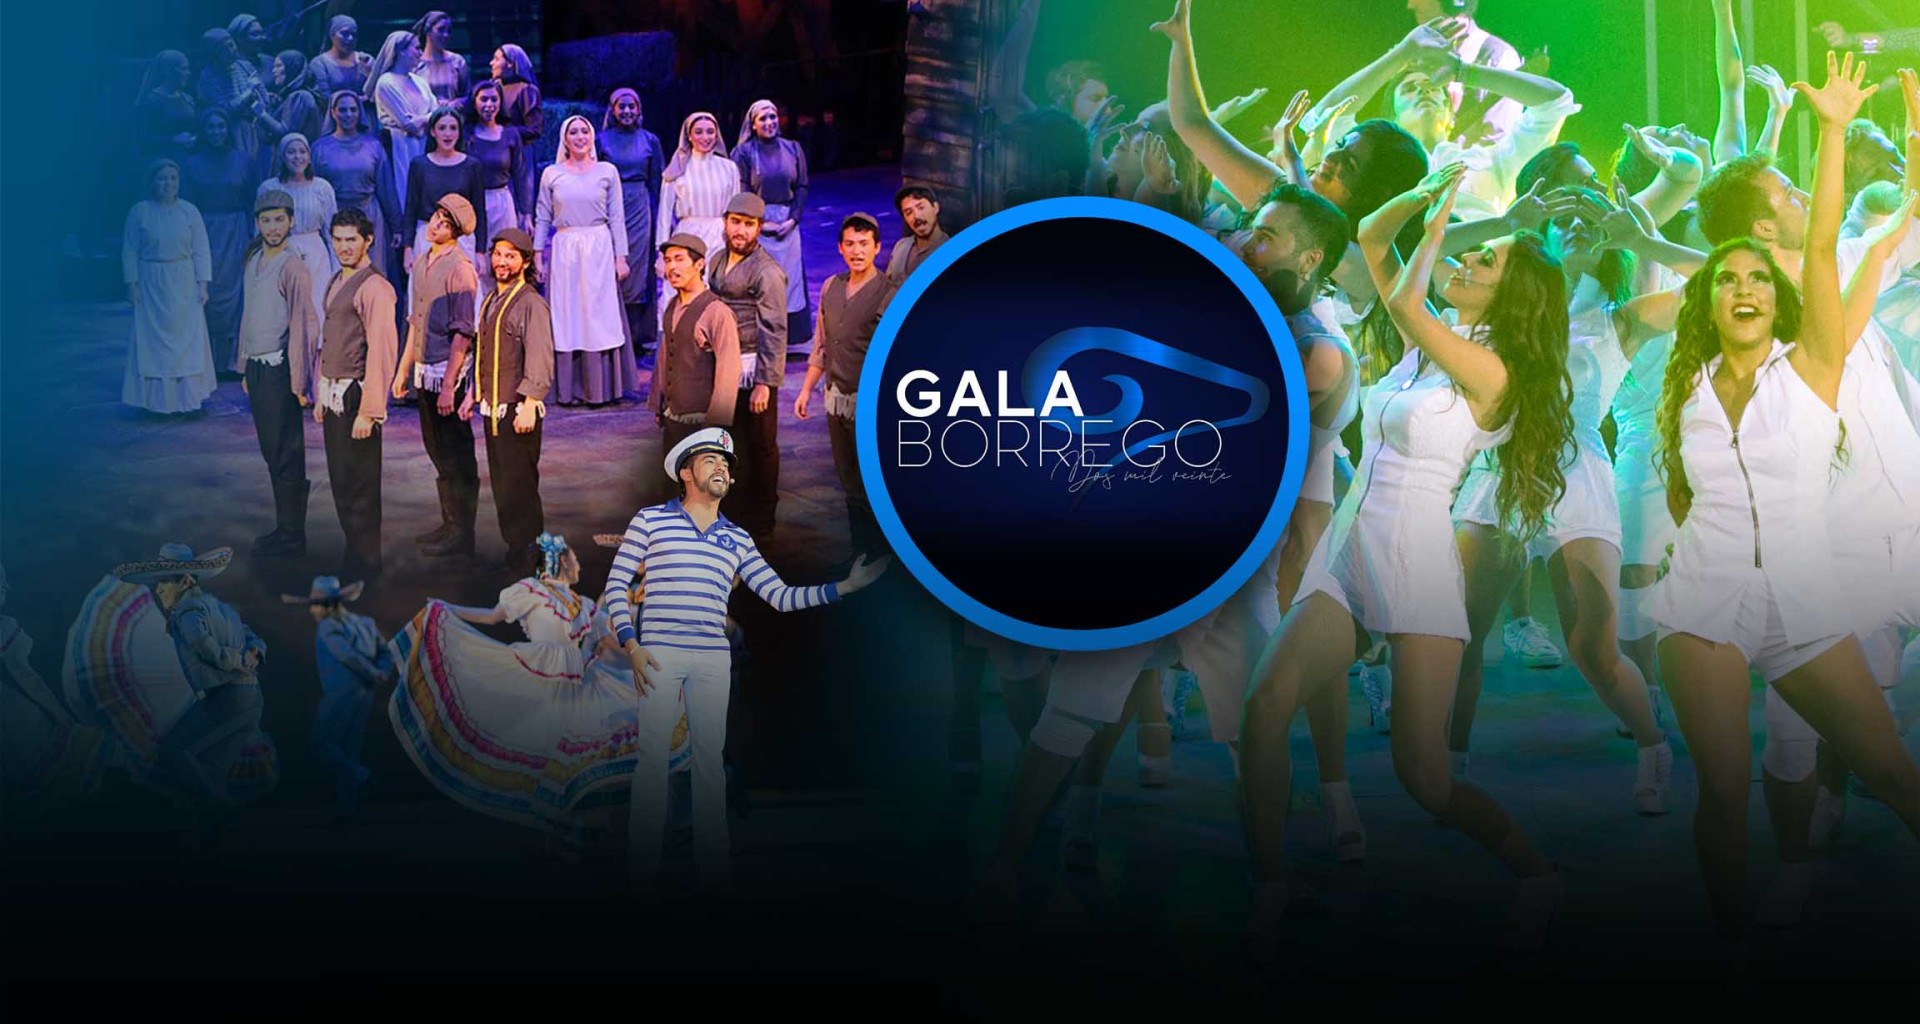  Premian a alumnos destacados en Arte y Cultura en Gala Borrego 2020